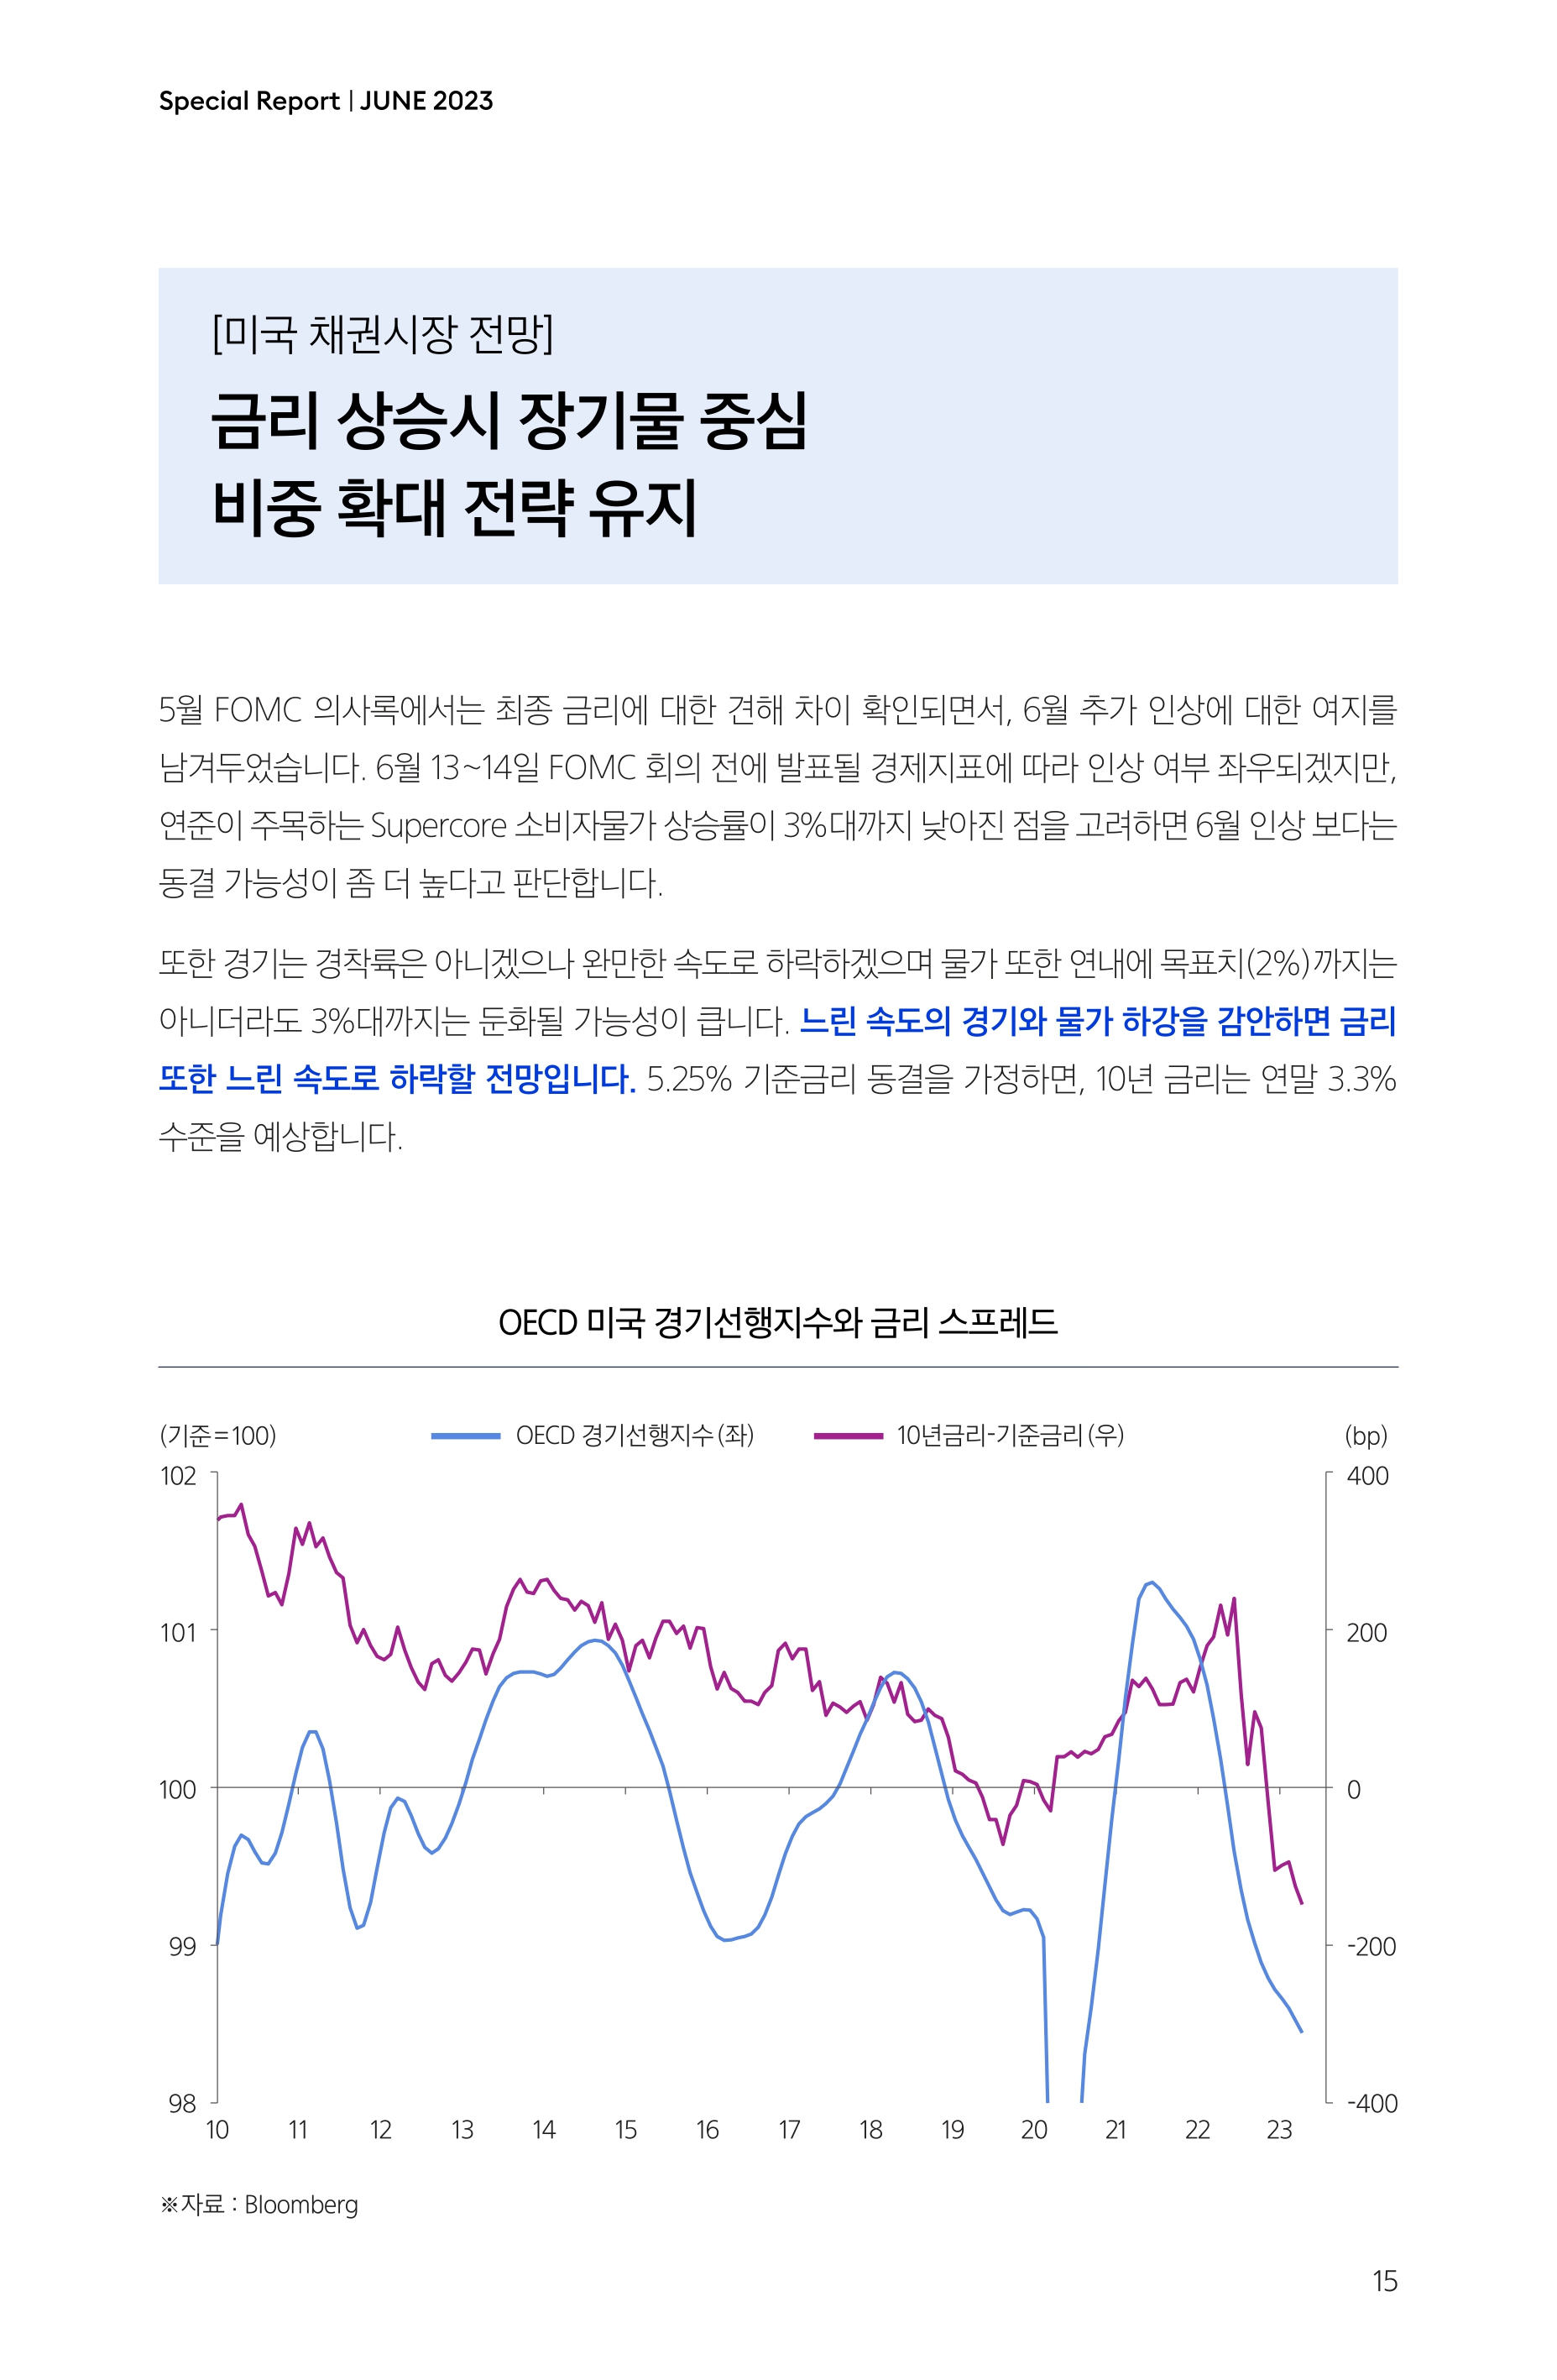 Samsung Global Market Outlook(낱장)_202306_page-0015.jpg